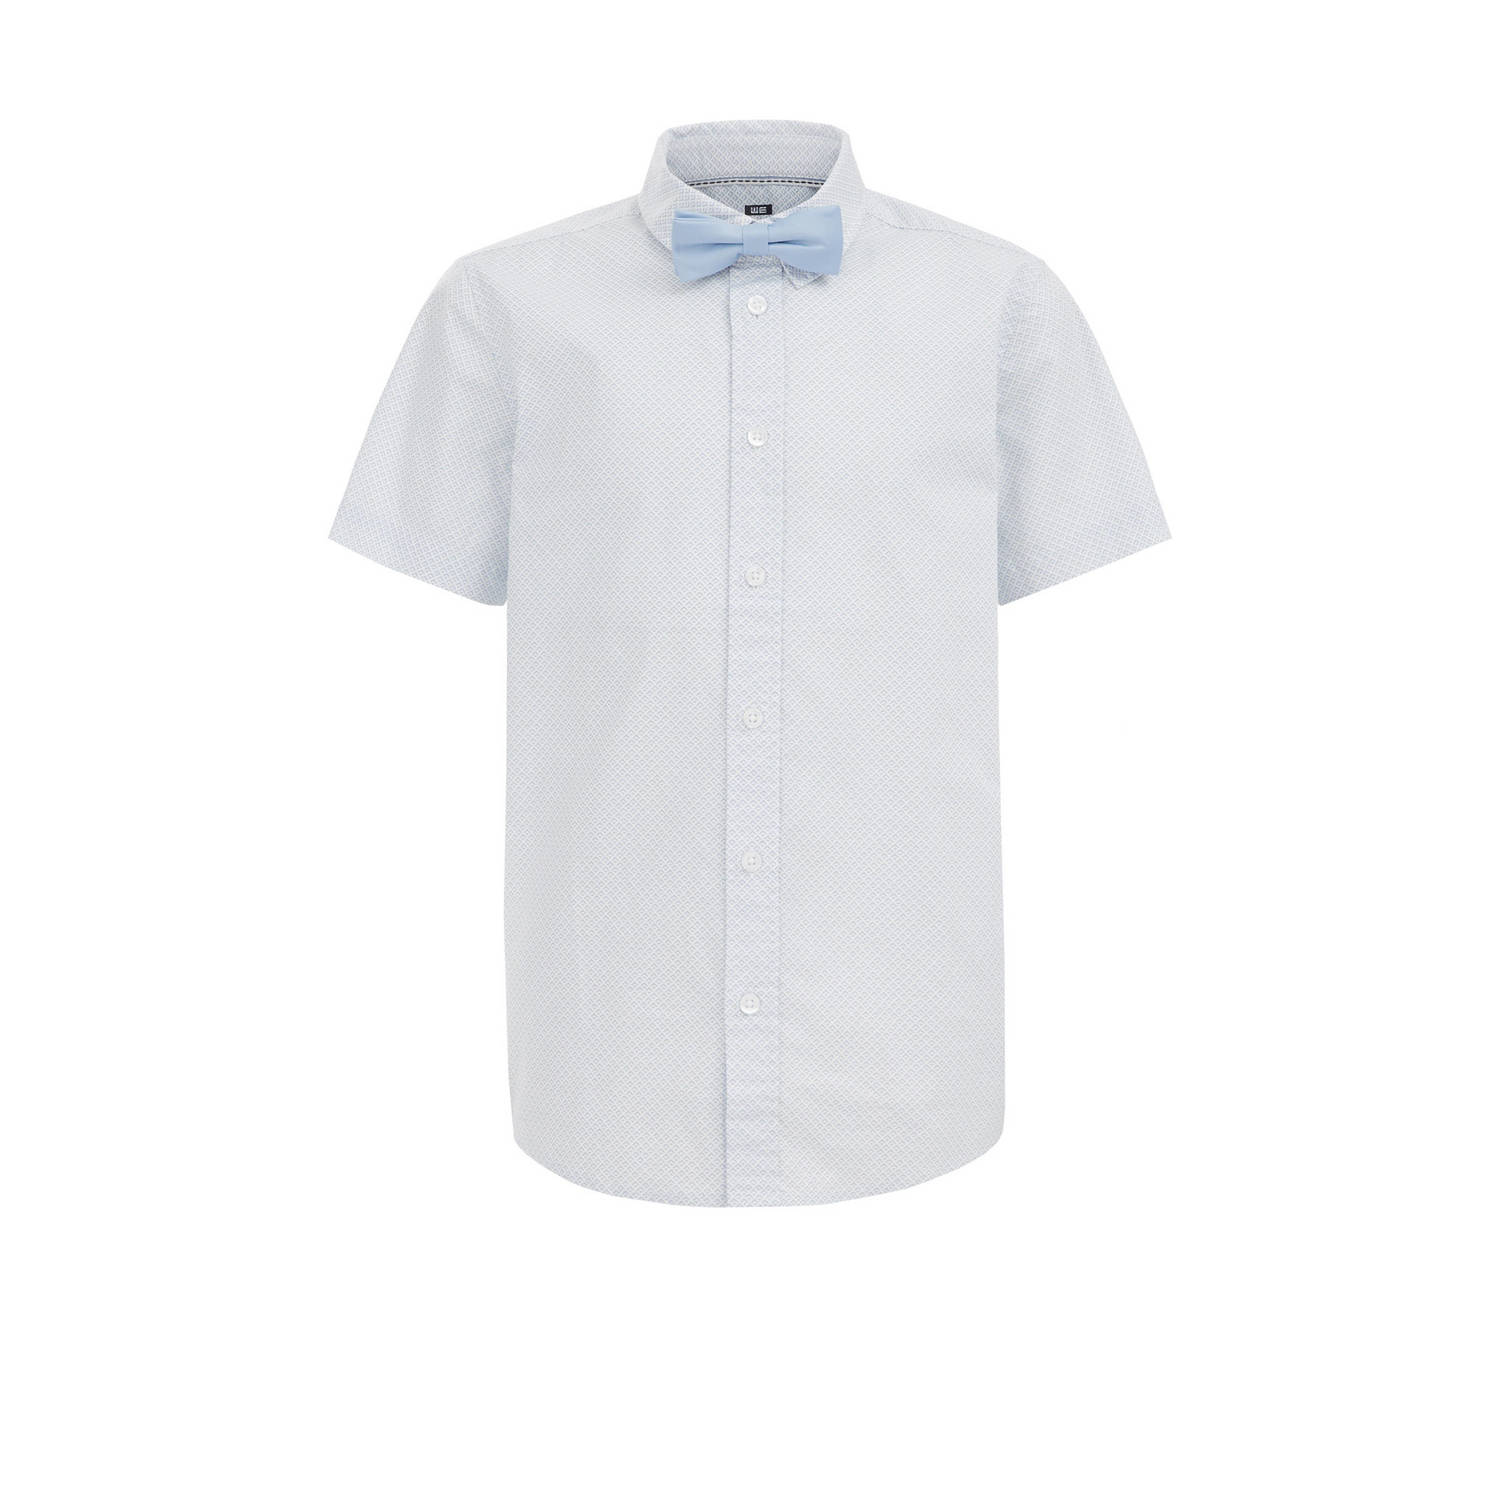 WE Fashion overhemd met vlinderstrik wit Blauw Jongens Katoen Klassieke kraag 110 116